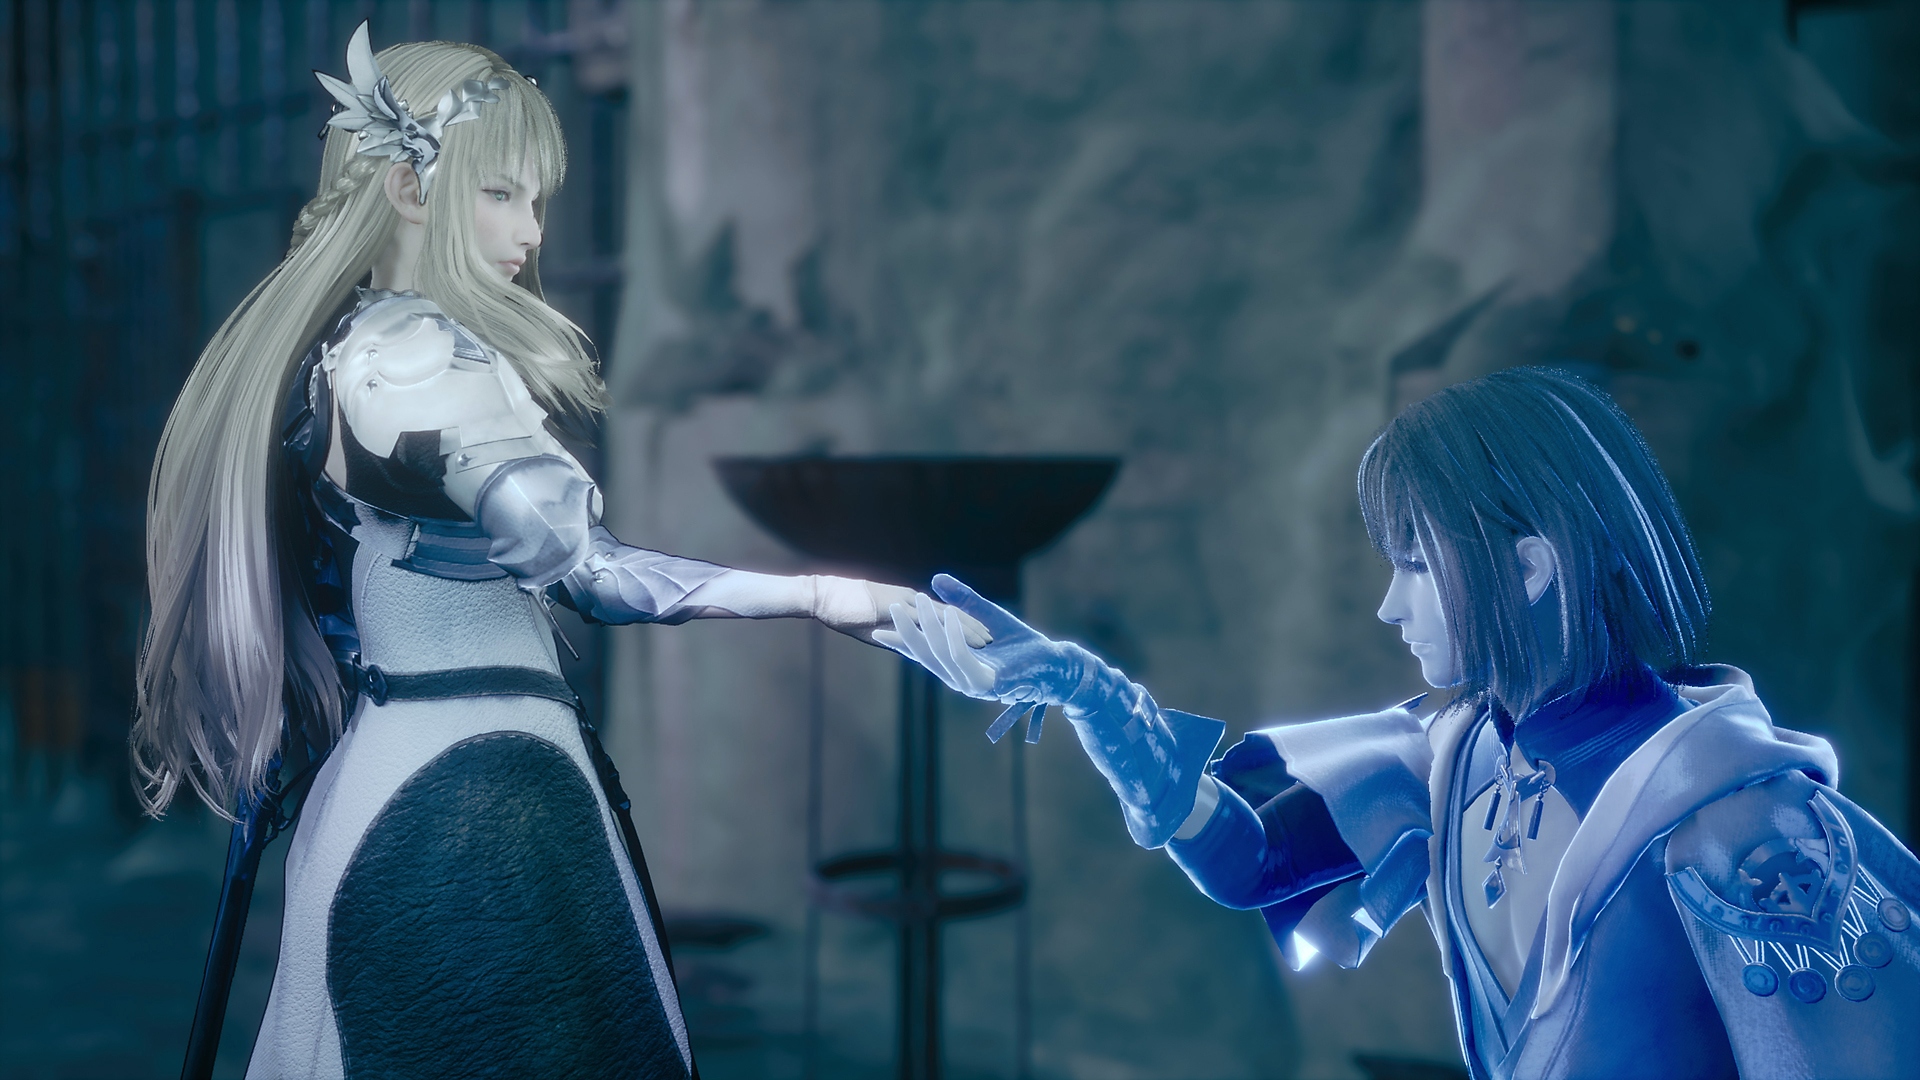 Valkyrie Elysium-skærmbillede med en blå lysende ridder, der knæler for en prinsesse